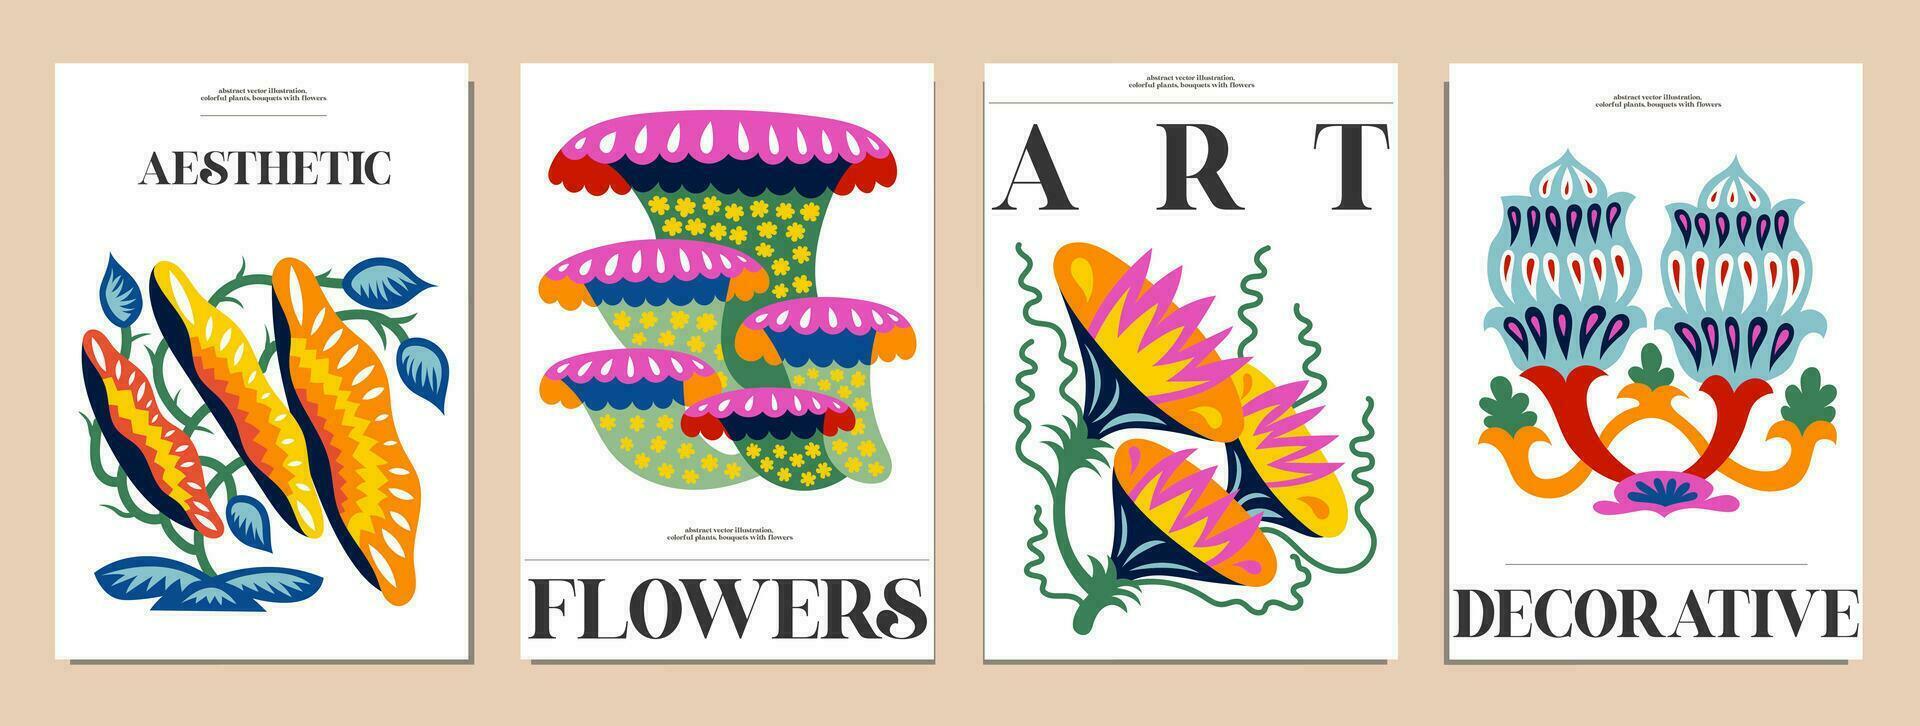 impostato di mazzi di fiori con fiori. interno la pittura. colorato illustrazioni di fiori per copertine, immagini. vettore illustrazione.